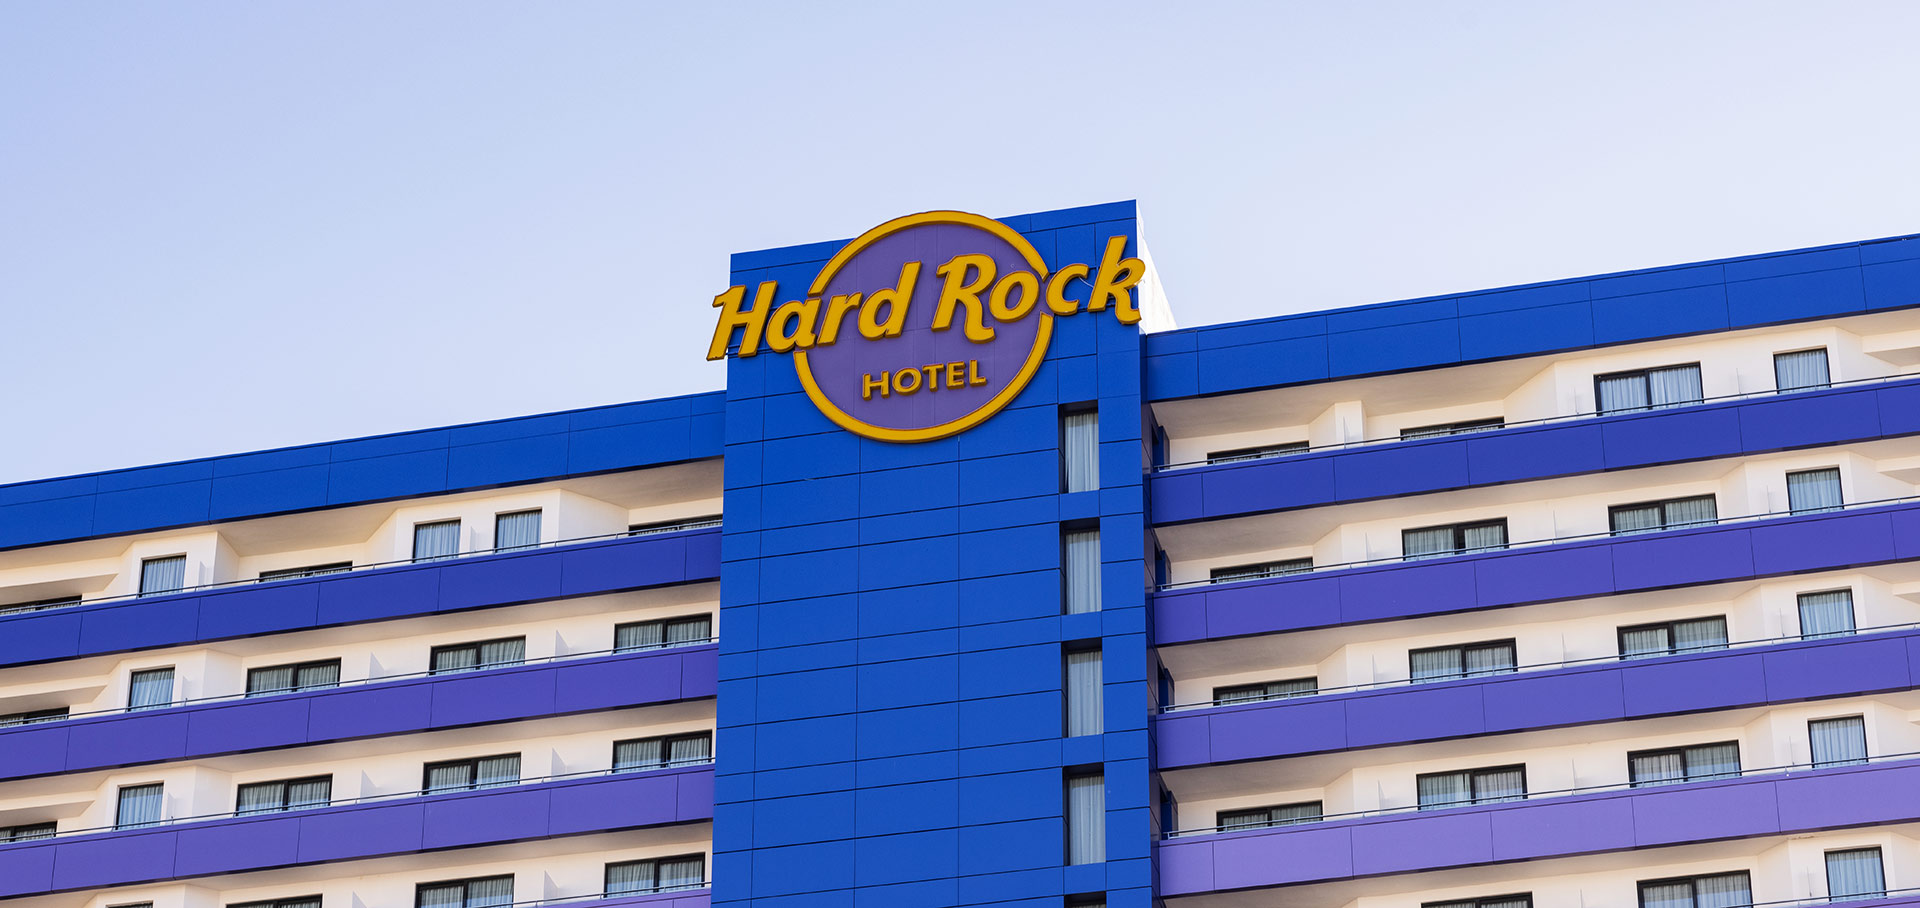 Reforma Hotel Hard Rock - Hormigones TAUCE